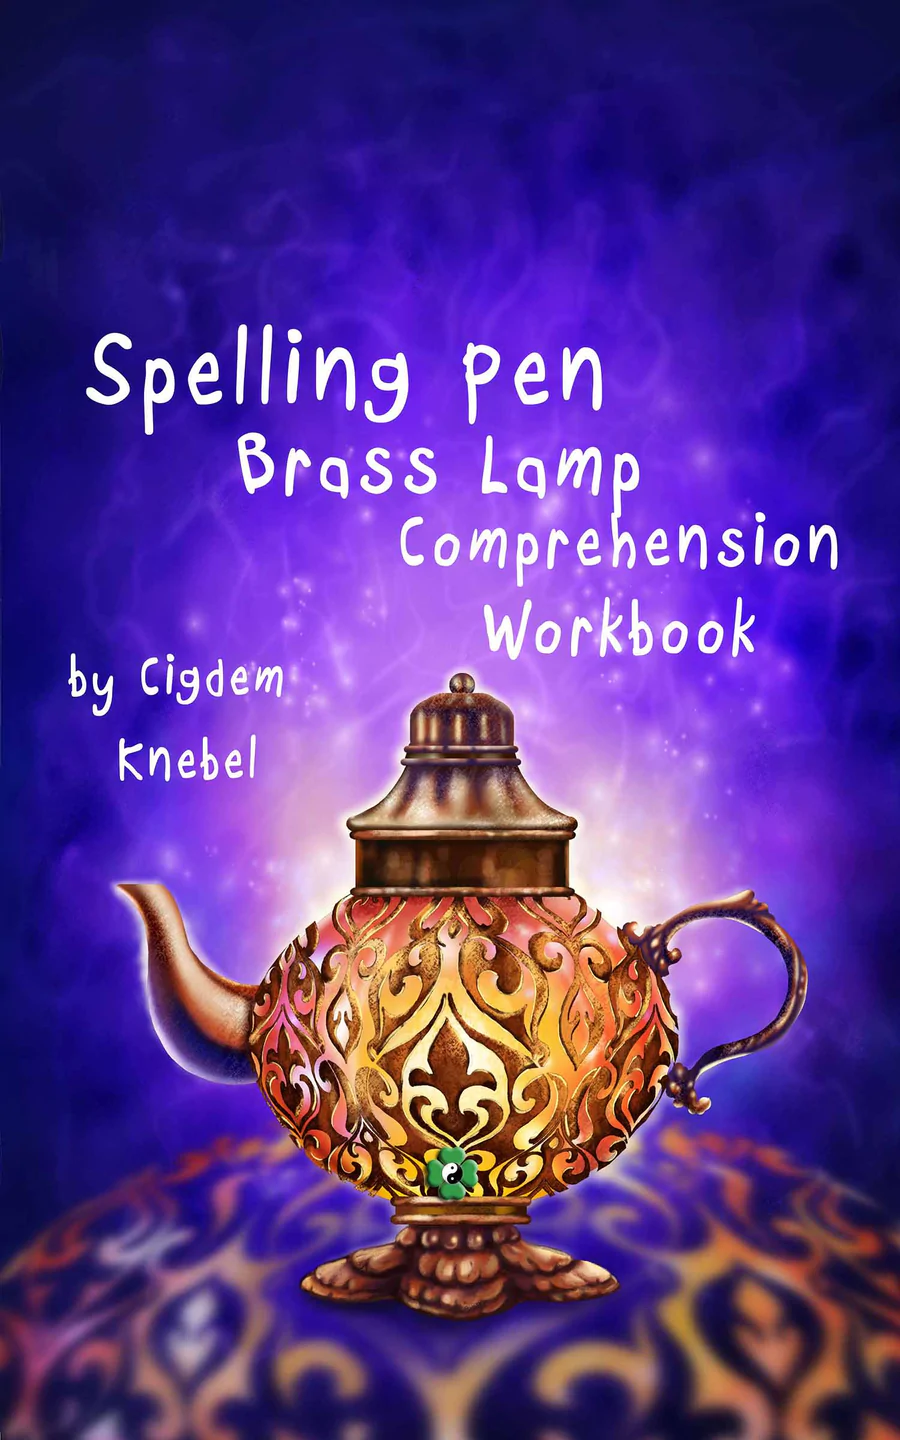 Spelling Pen Brass Lamp in a fantasy world